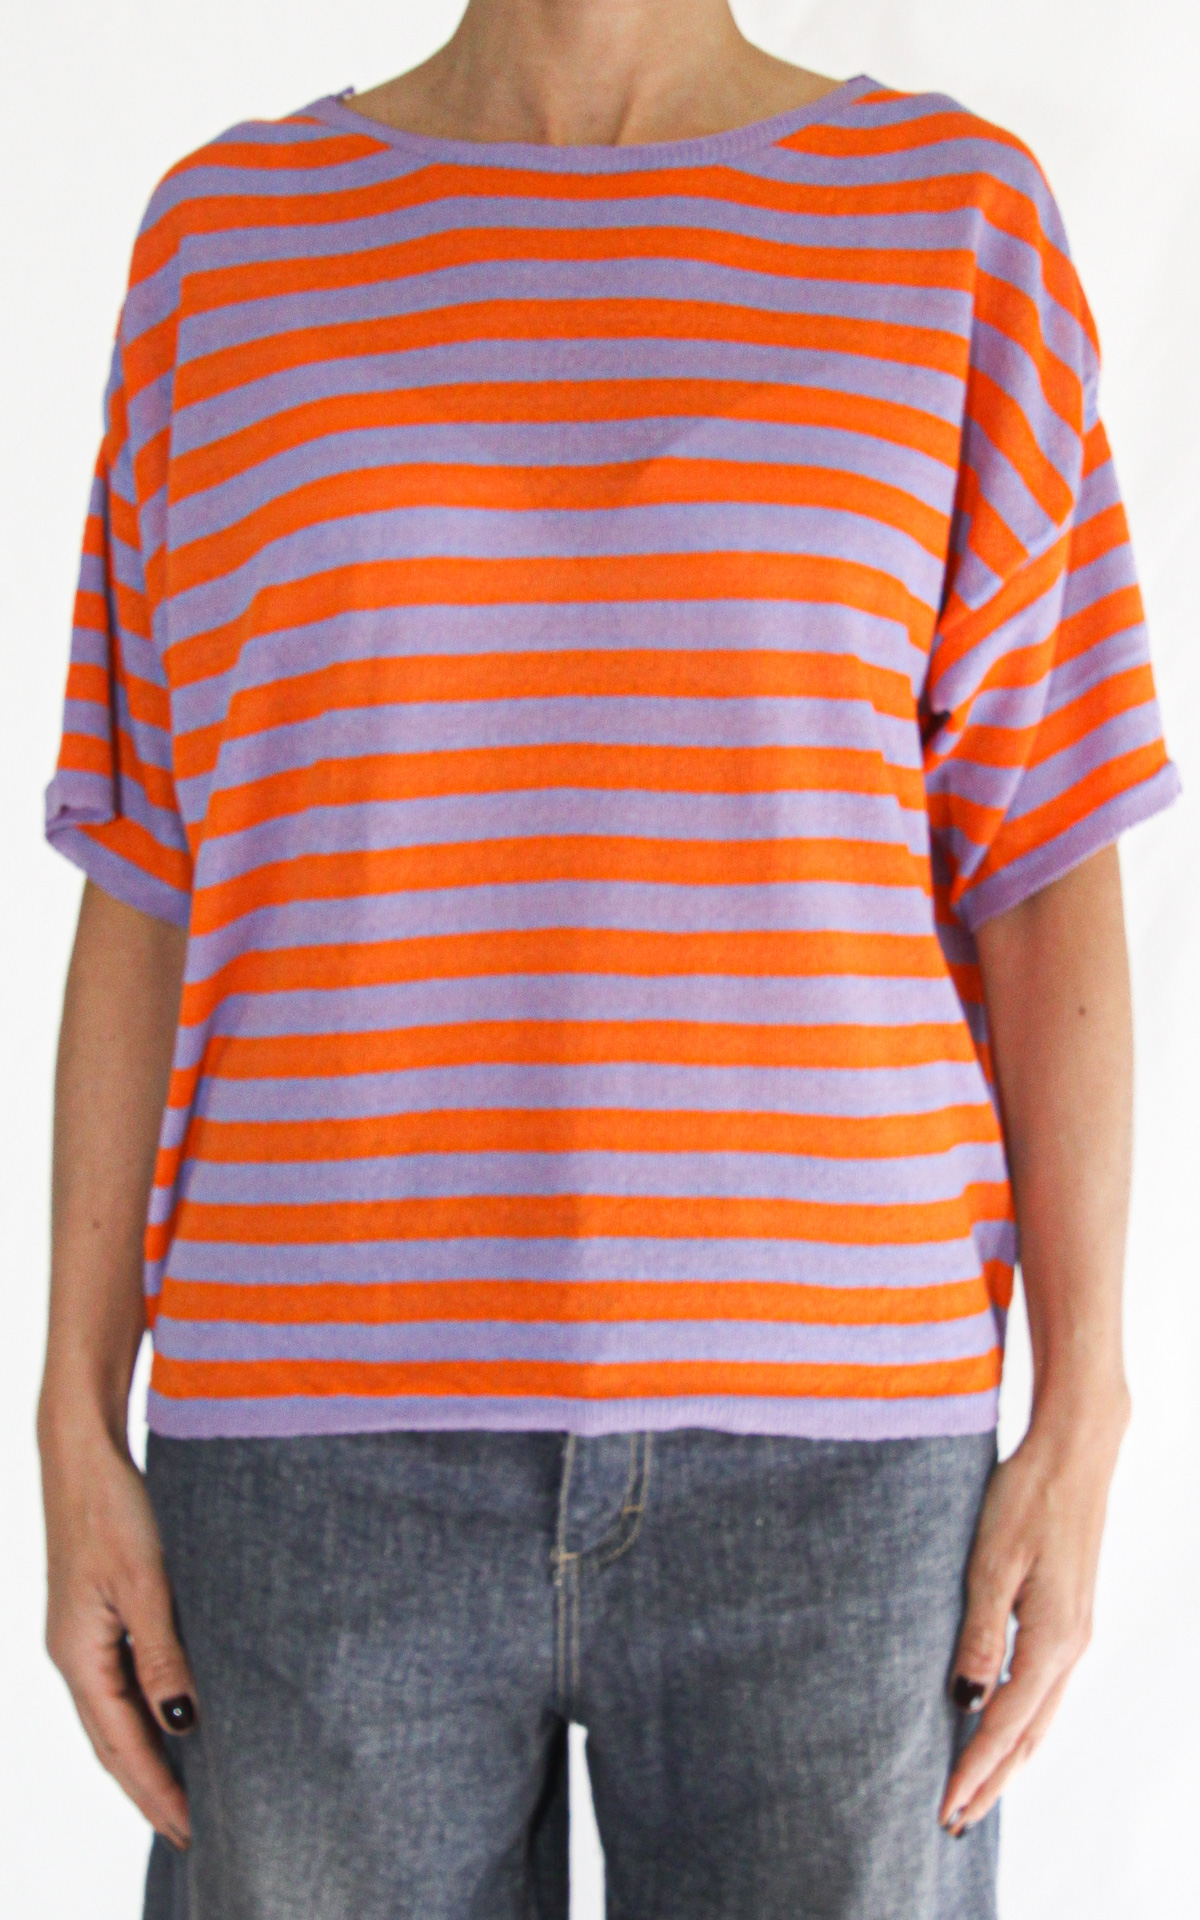 Off-On - maglia a righe - arancione / glicine